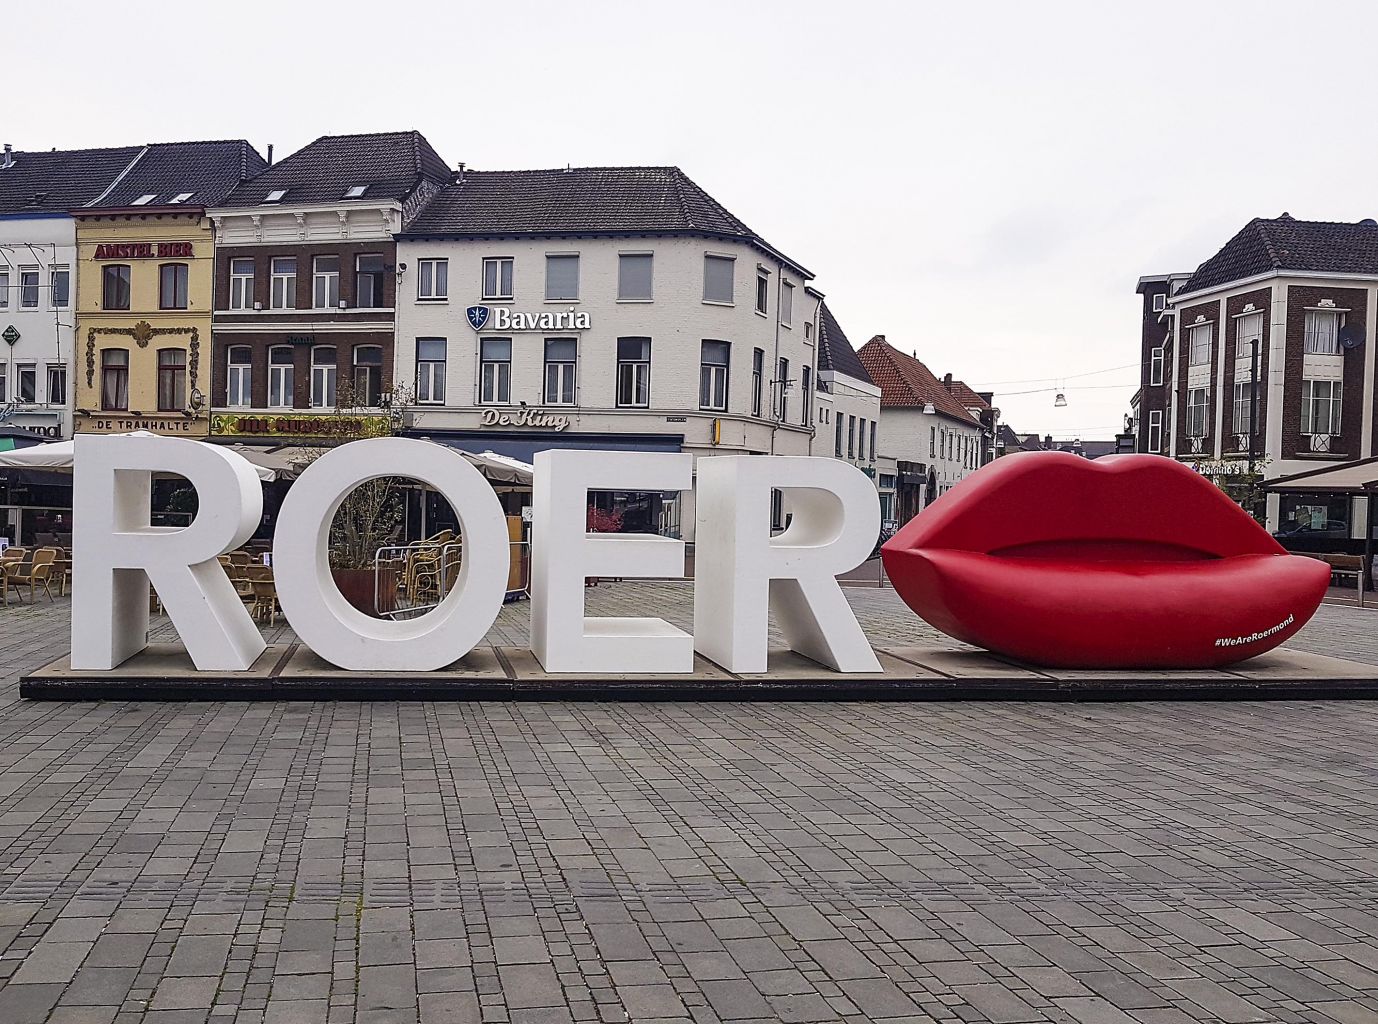 Roermond/NL